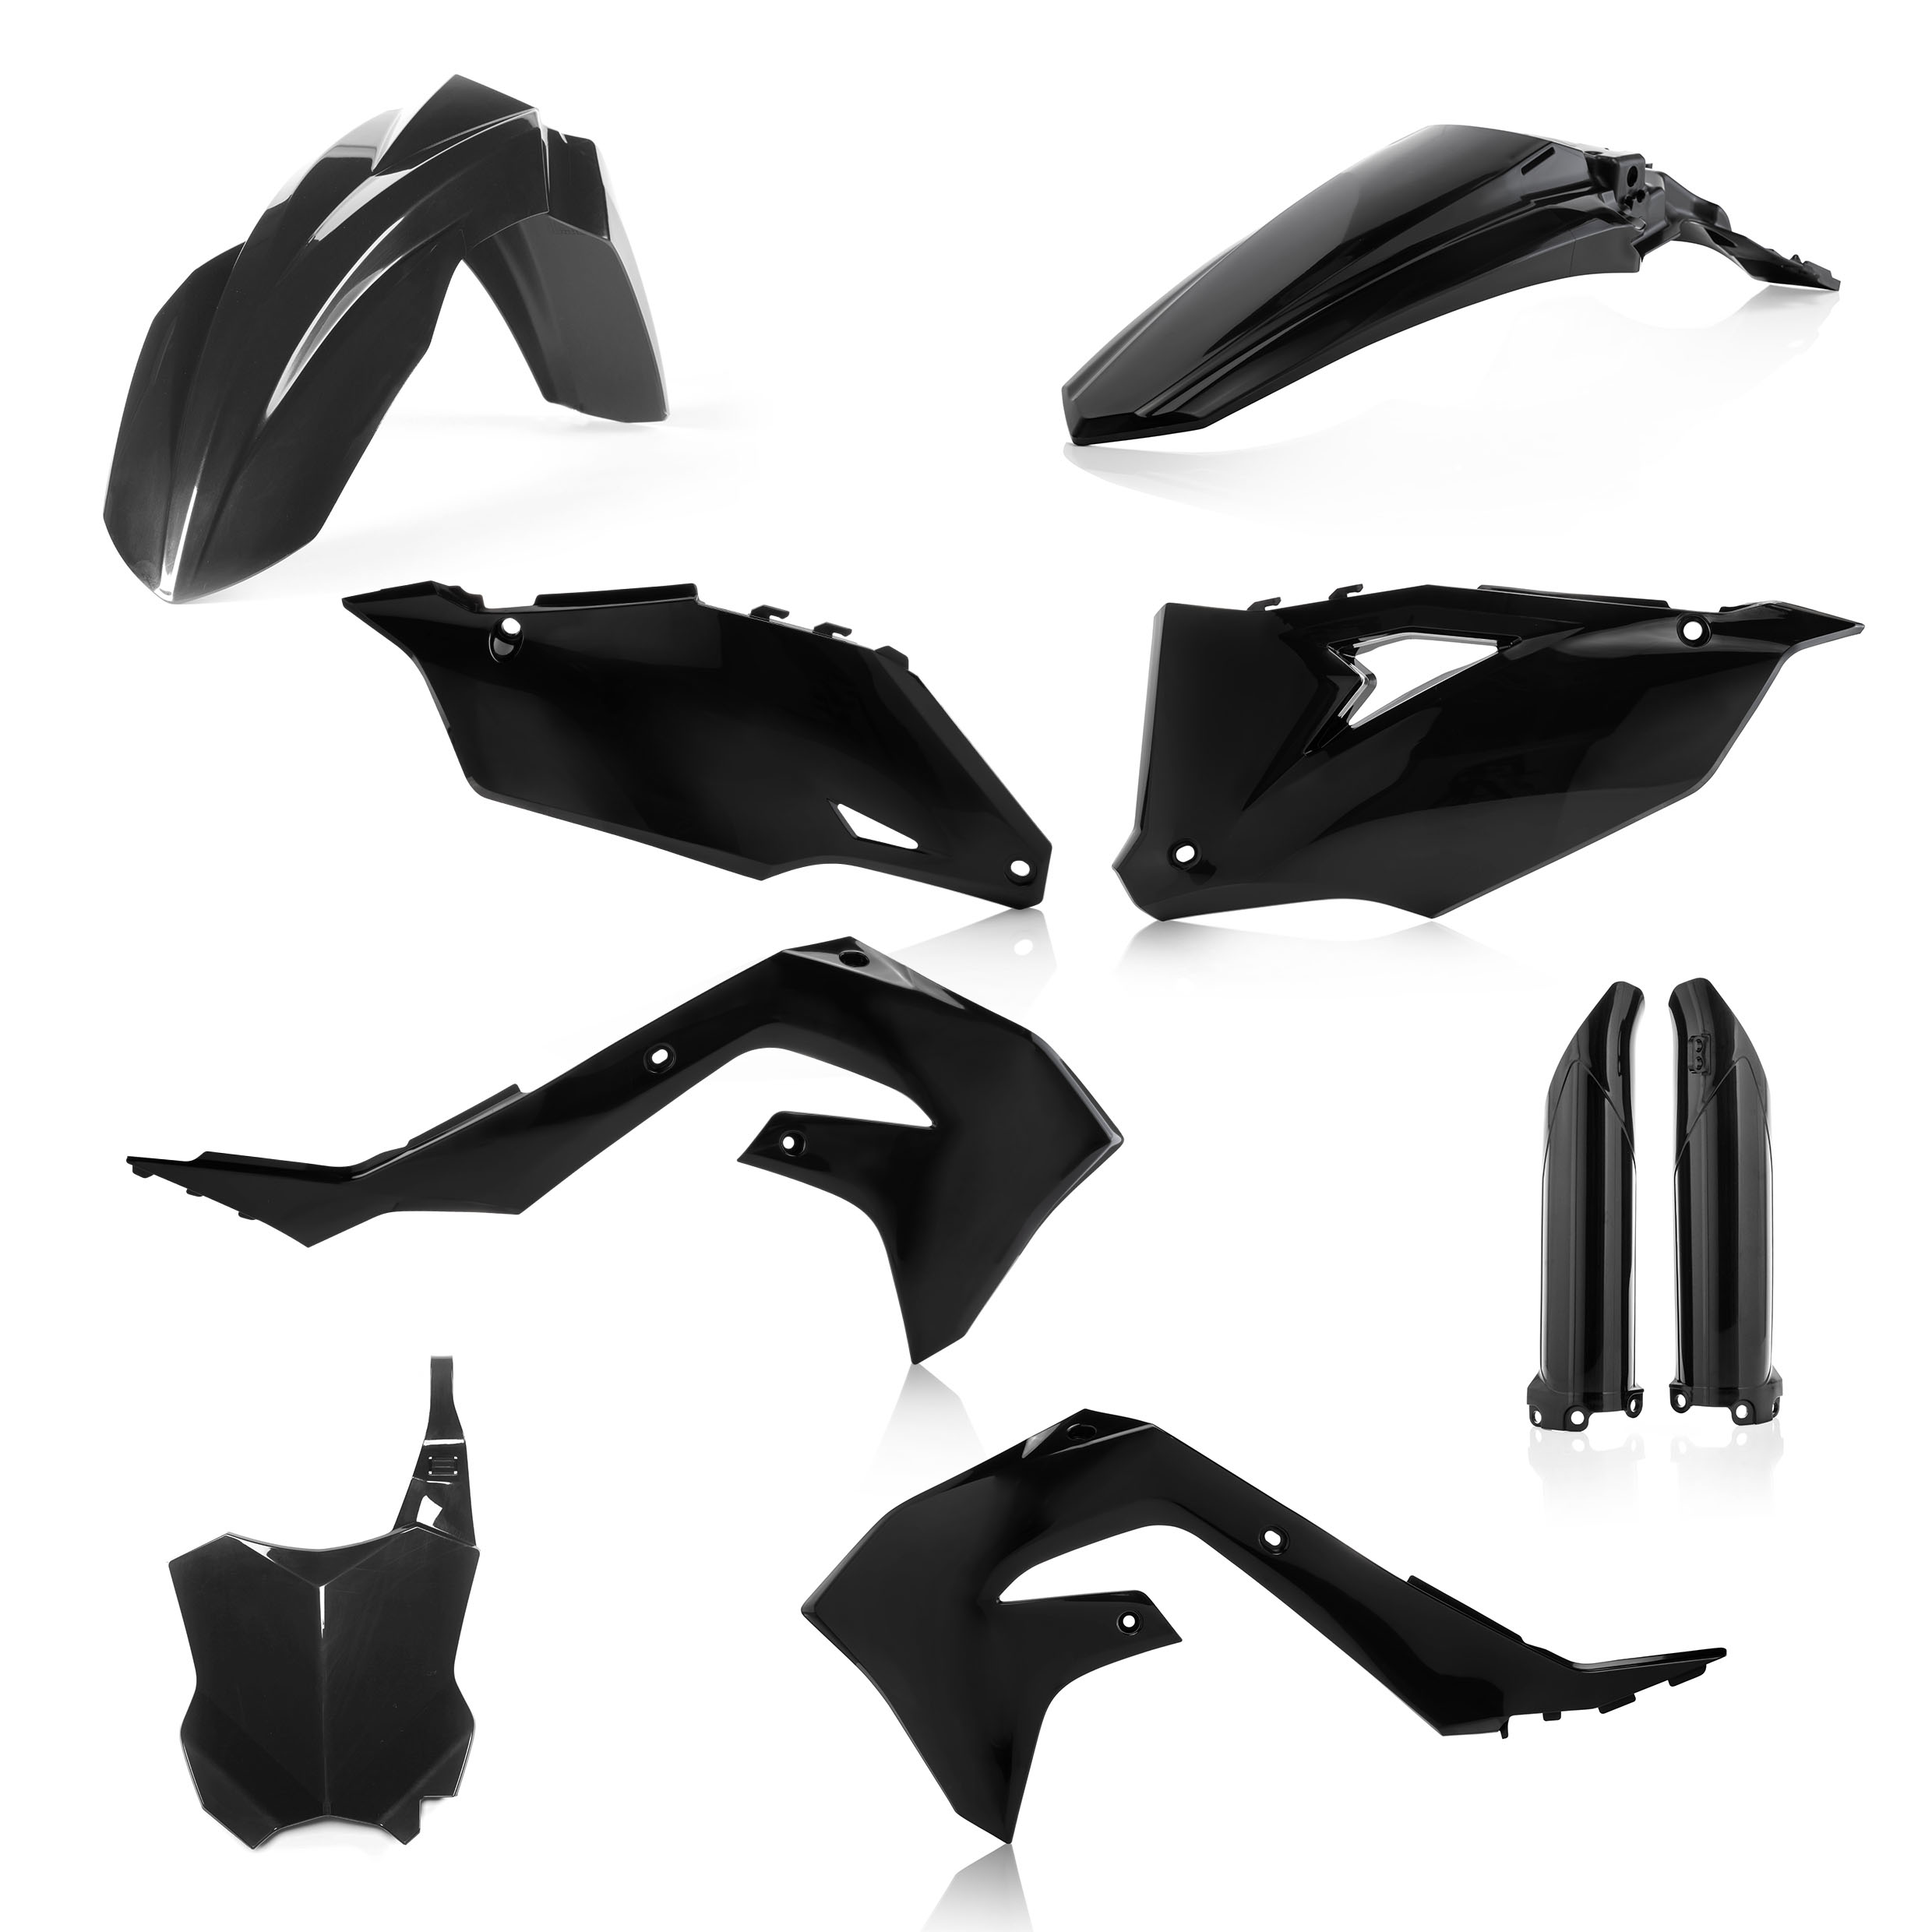 Plastikteile für deine Kawasaki KX 250-450 in schwarz bestehend aus Kotflügel vorn Kotflügel hinten Kühlerspoiler Seitenteile Gabelschützer Startnummerntafel